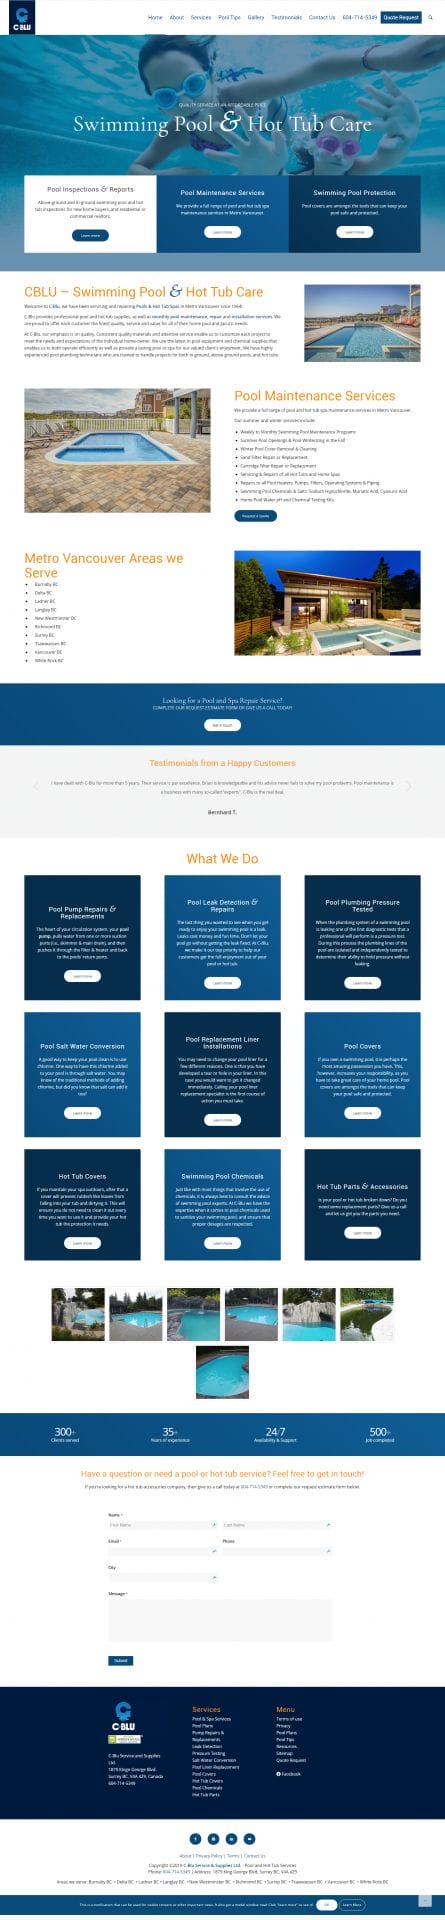 C-blu website layout graphic